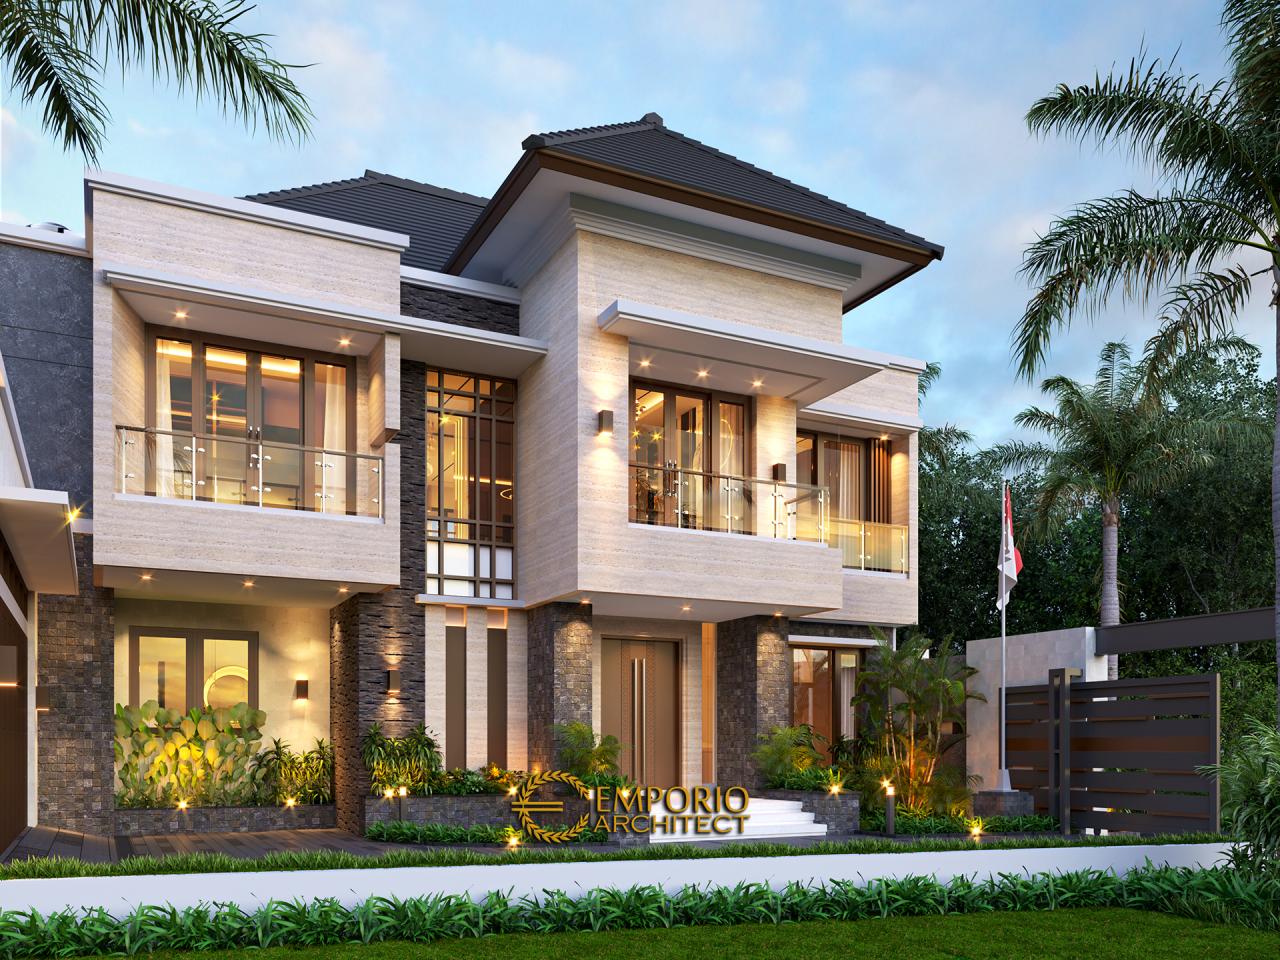 72 Contoh Desain Rumah Minimalis Tropis 2 Lantai Paling Diminati